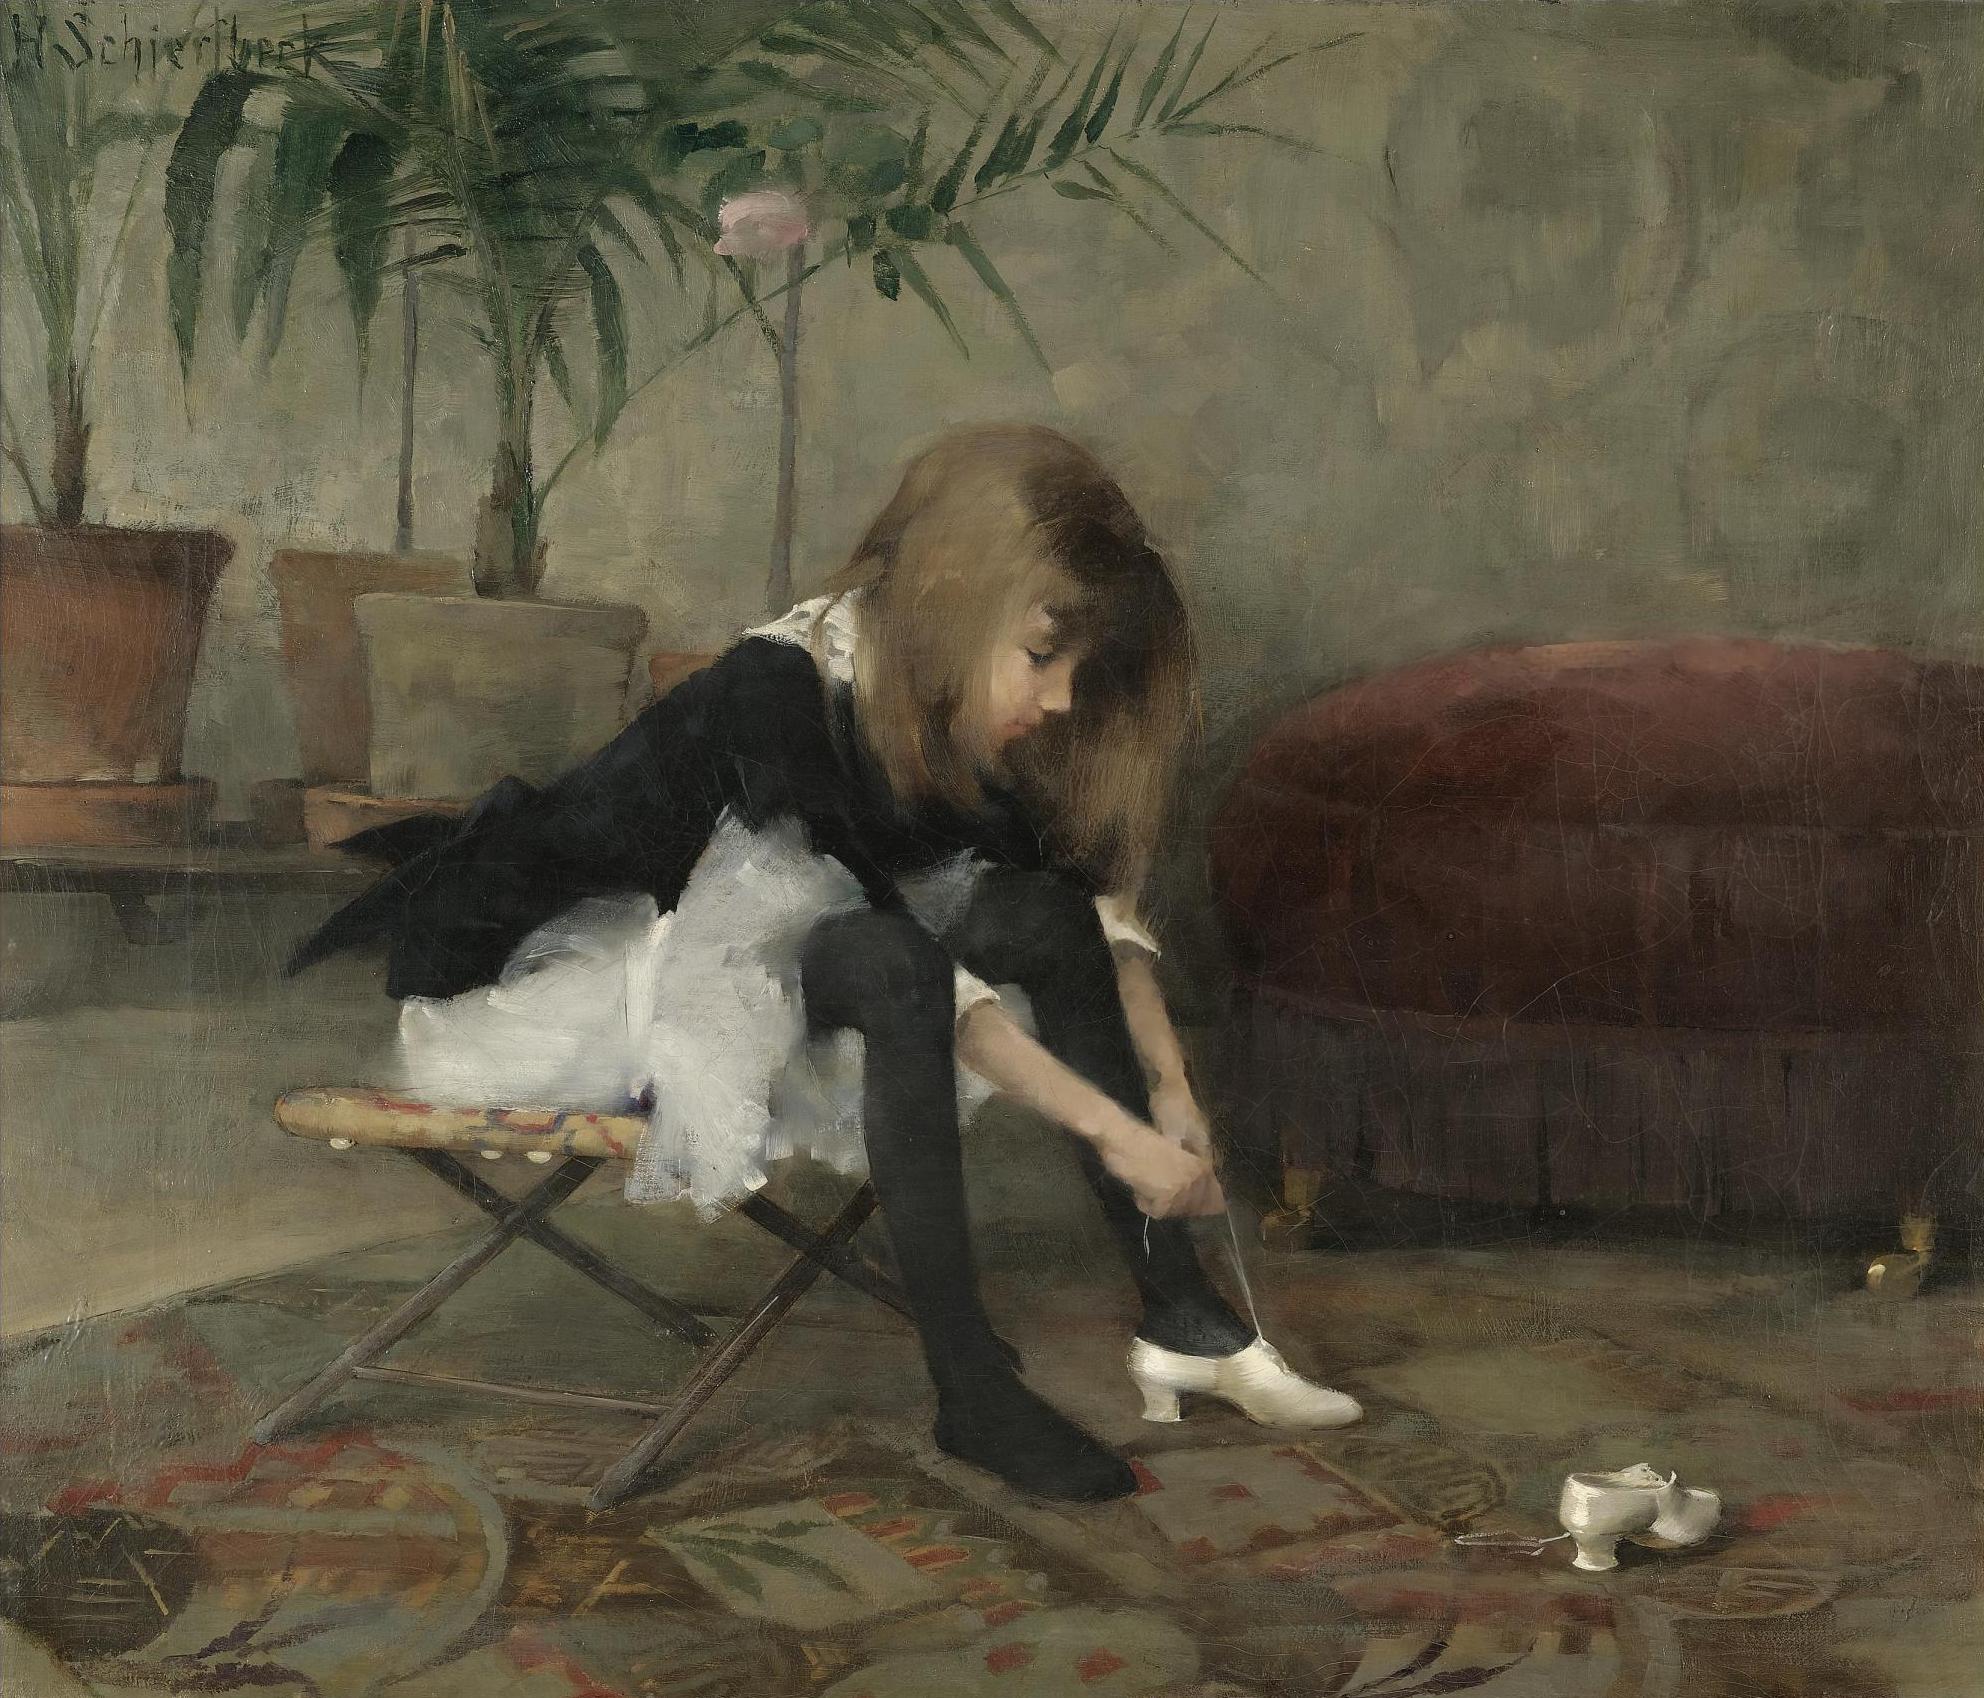 舞鞋 by Helene Schjerfbeck - 1882 - 55 x 64.5 公分 